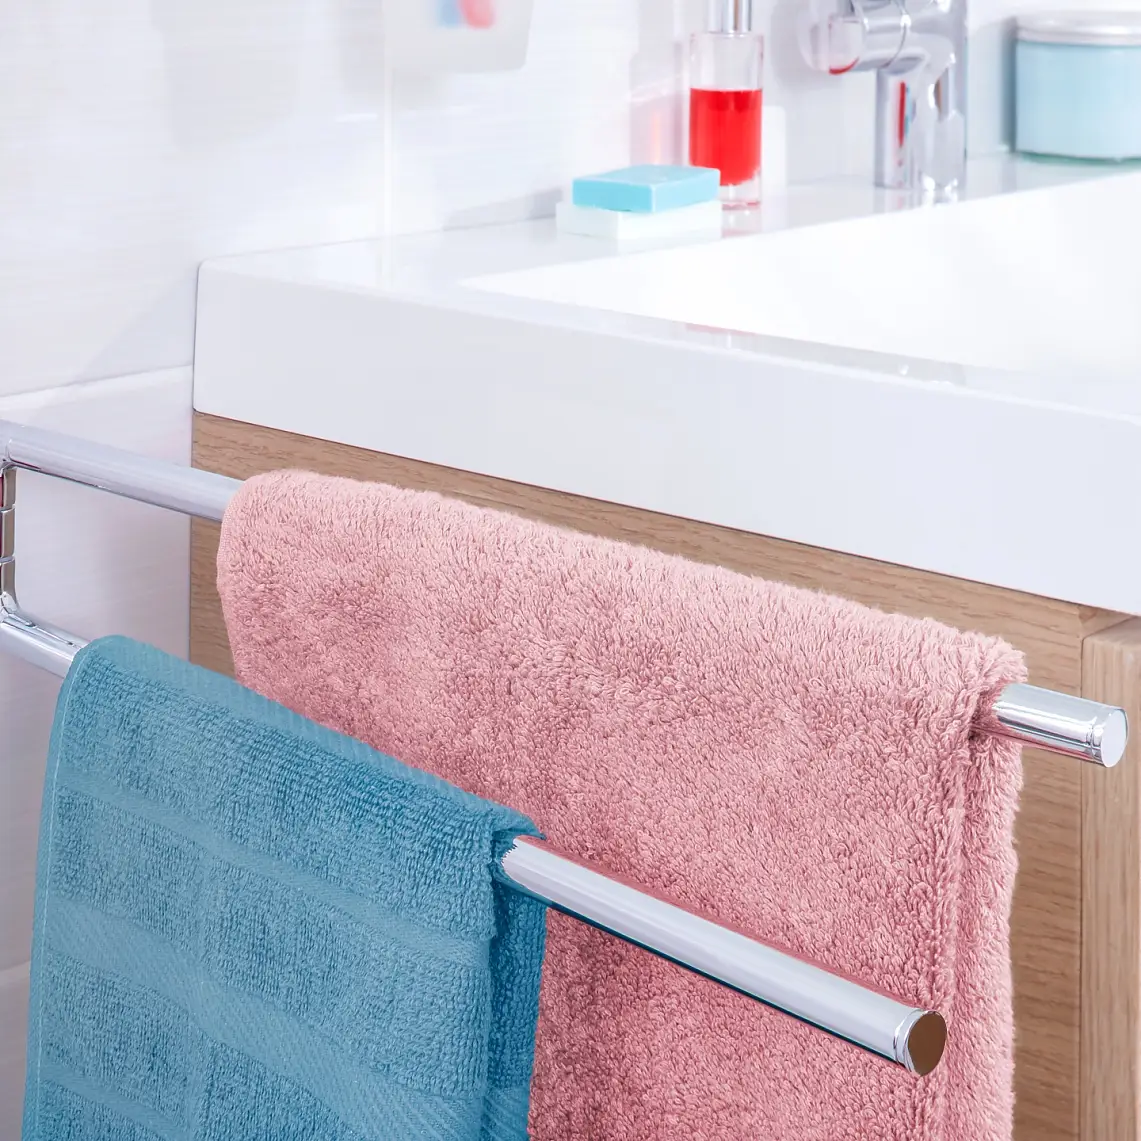 Mějte ručníky po ruce a dejte jim prostor, kde by mohly po použití proschnout.